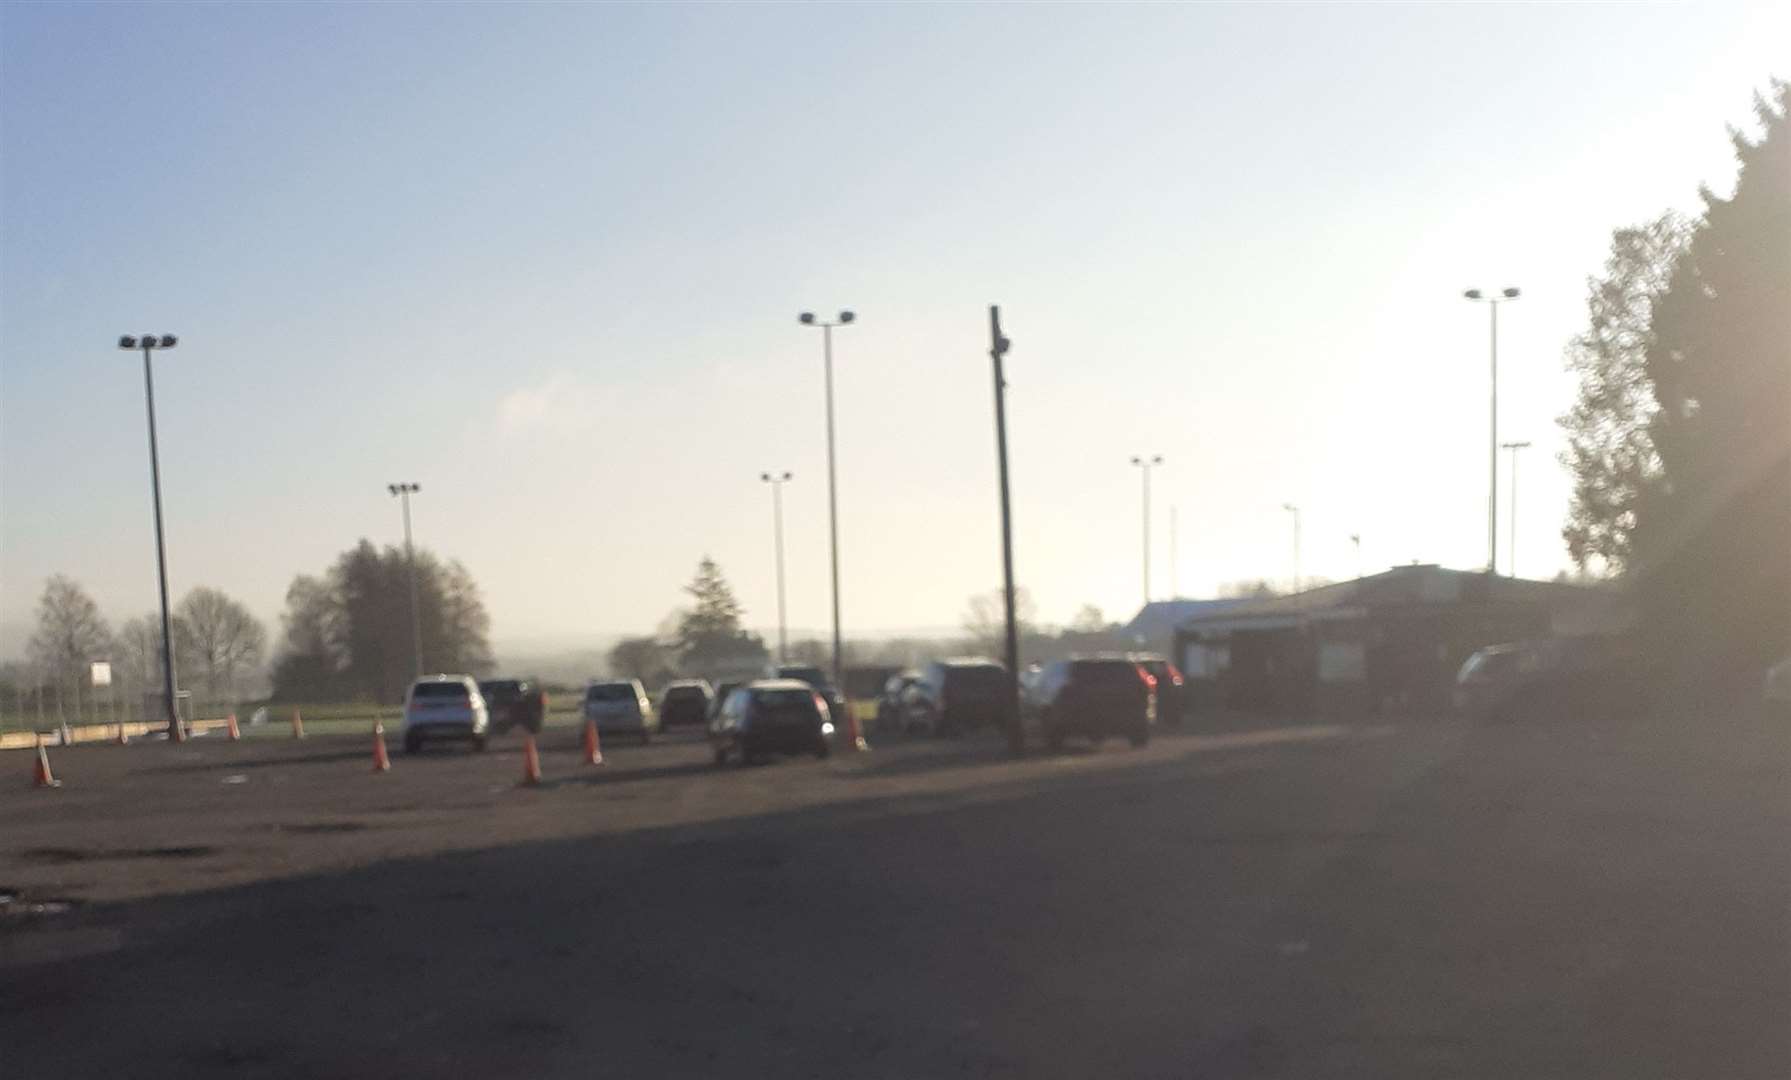 More than a dozen cars were seen parked in the Ashford Hockey Club car park